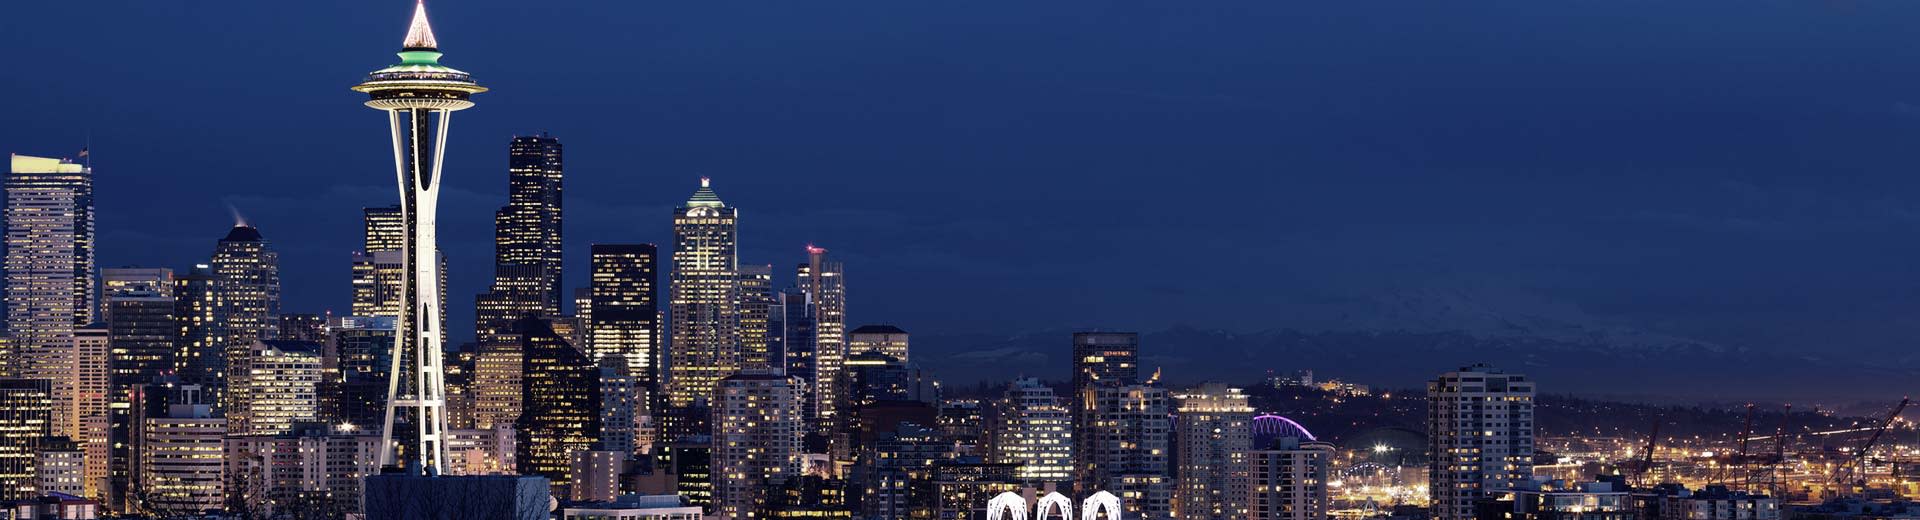 La célèbre aiguille spatiale de Seattle se profile dans la Nightsky, entourée de gratte-ciel élogieux et d'immeubles.